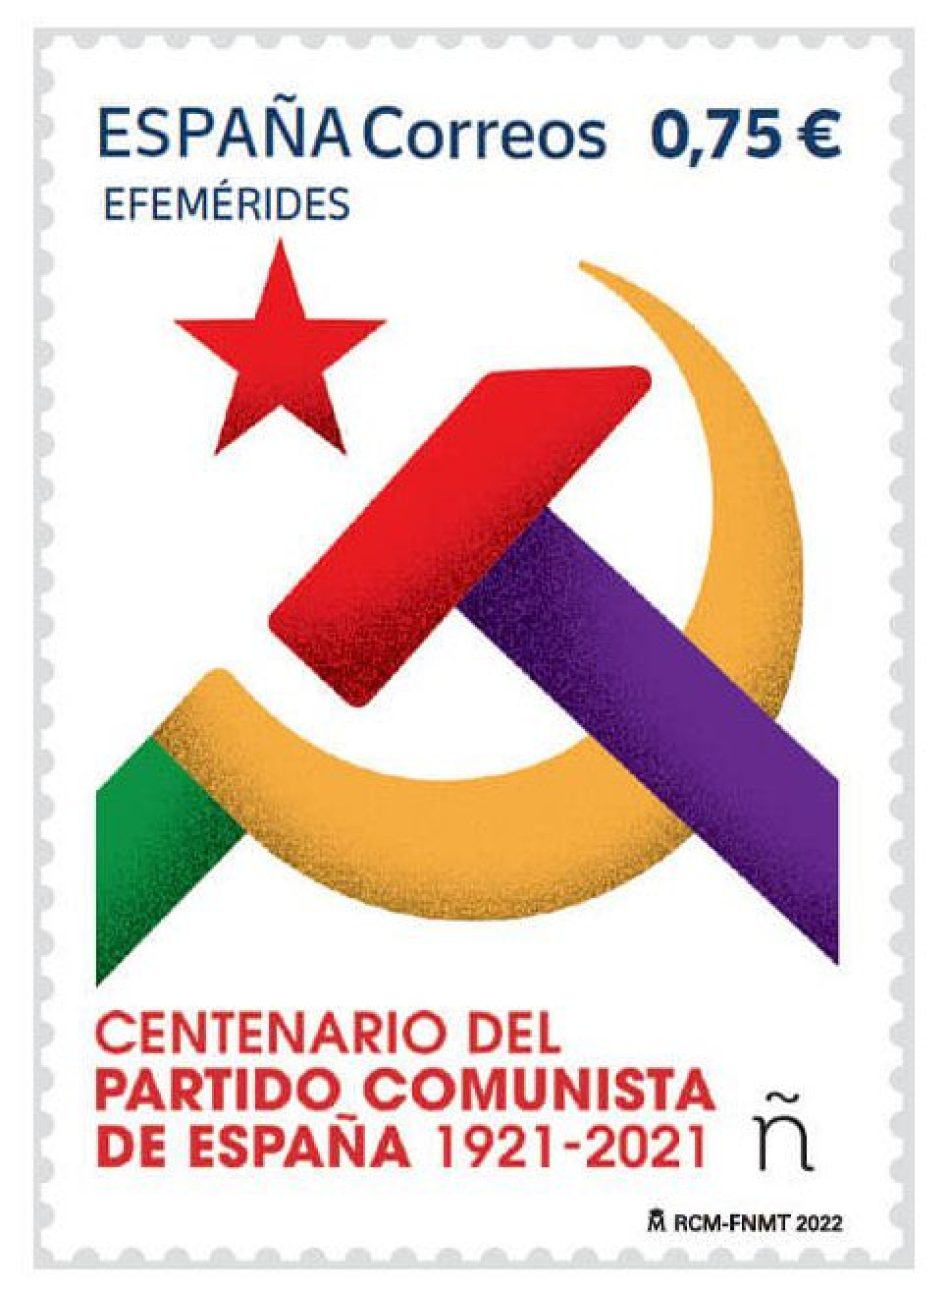 Enrique Santiago denuncia que la decisión judicial de suspender la emisión de un sello del PCE “traspasa una línea roja en democracia” y “cuestiona la legalidad del Partido Comunista”